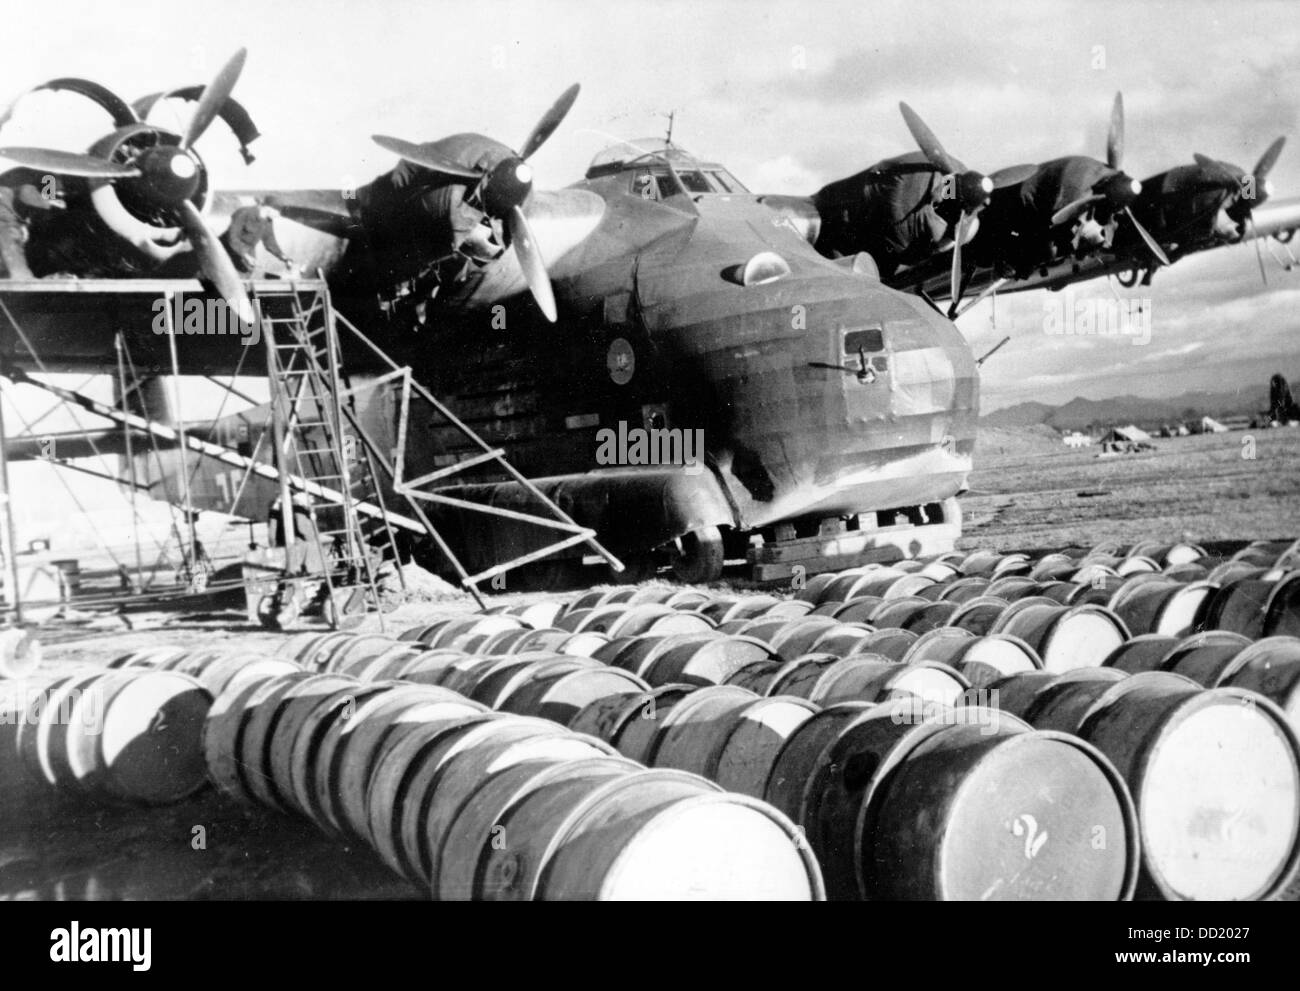 L'immagine della Propaganda nazista! Mostra il velivolo di trasporto Me 323 prodotto da Messerschmitt, che ha un enorme vano di carico, nel novembre 1943. Luogo sconosciuto. Fotoarchiv für Zeitgeschichte Foto Stock